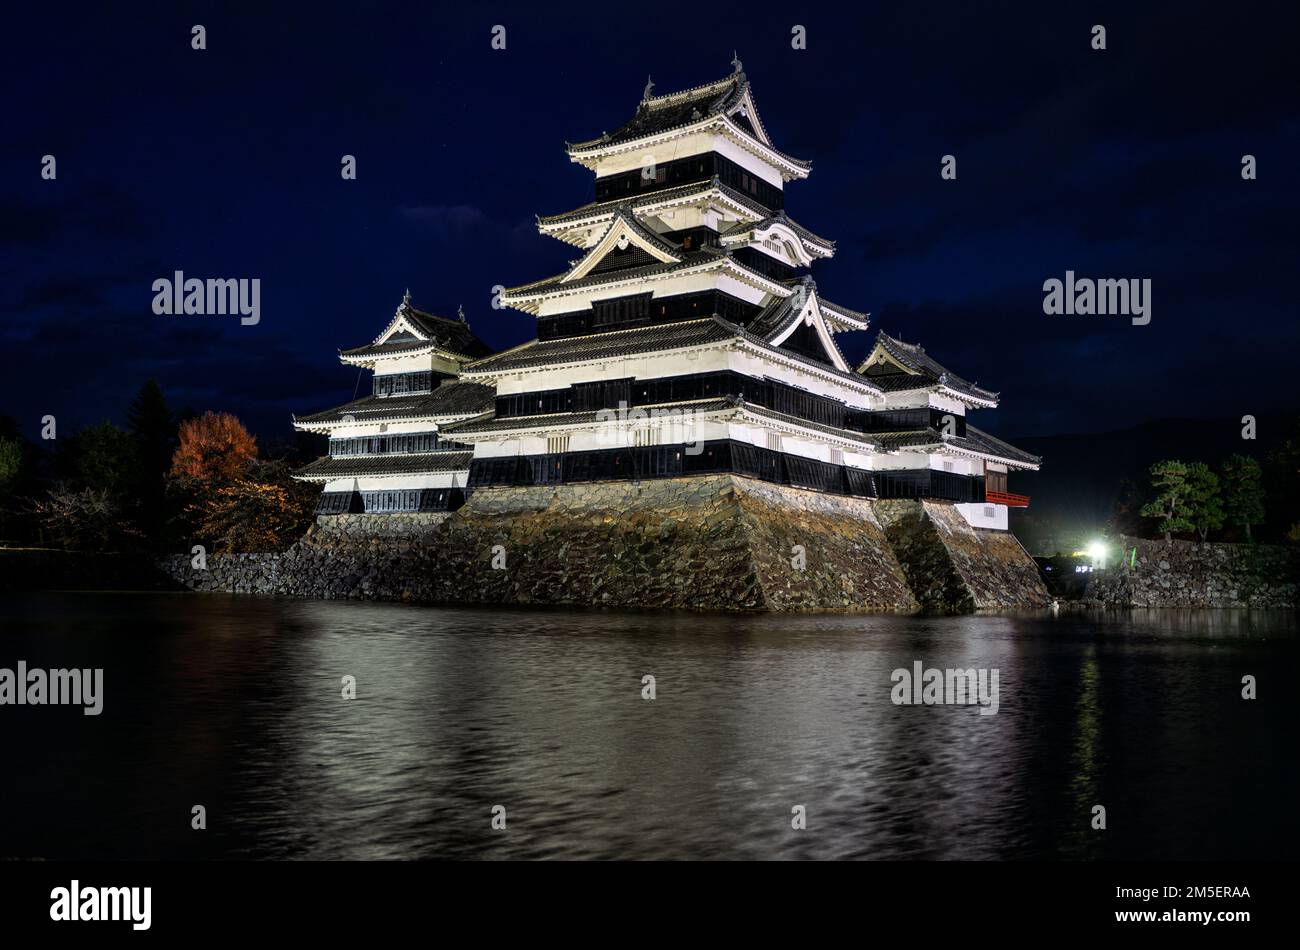 Matsumoto Castle illuminated at night, Japan Stock Photo